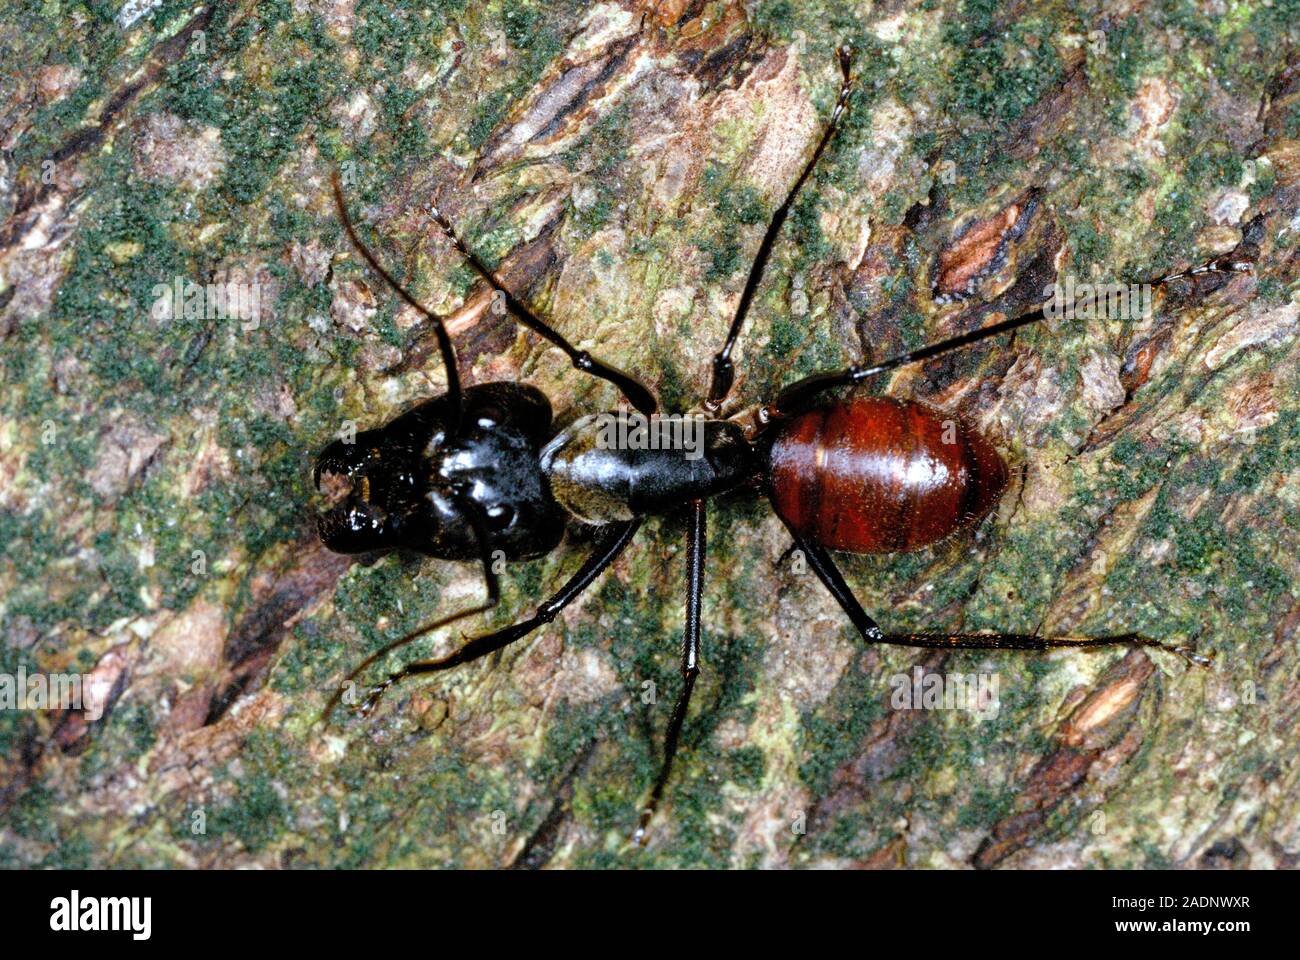 Camponotus gigas sulla corteccia di albero. Questa è una delle più grandi  specie di ant, misurando tra 20,9 millimetri e 28,1 millimetri di  lunghezza. Esso inhabi Foto stock - Alamy